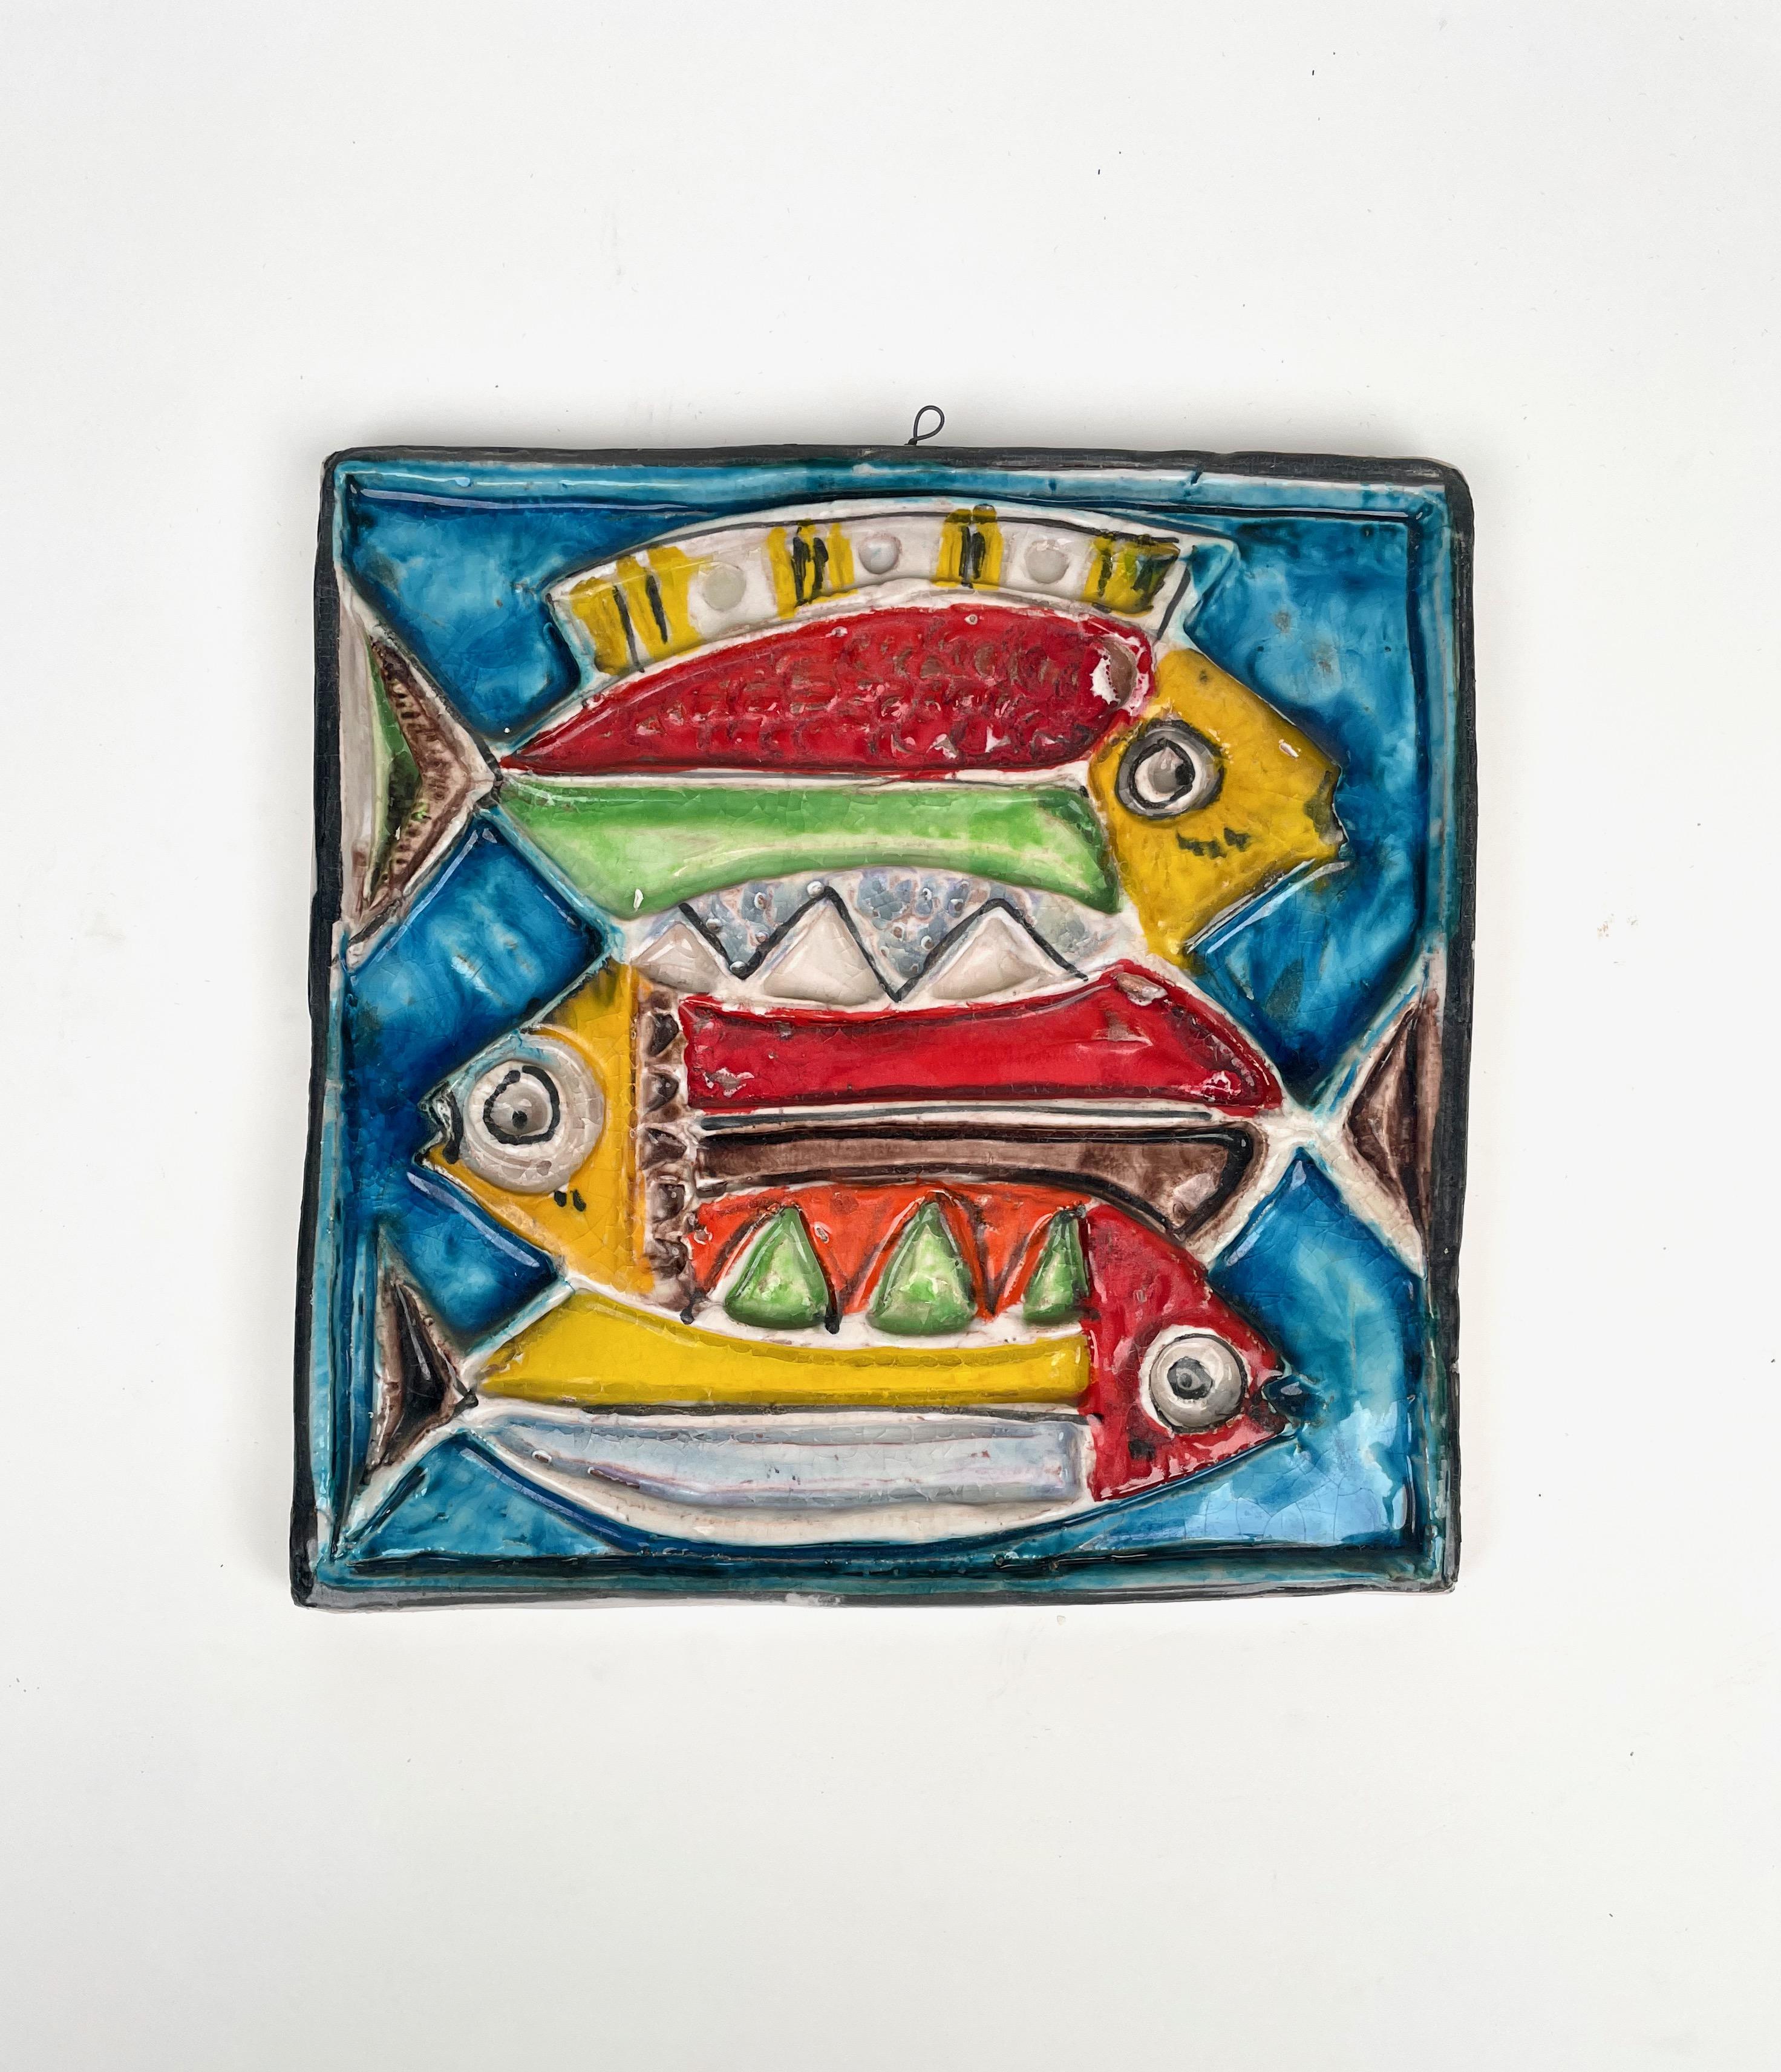 Belle plaque murale carrée en céramique colorée représentant trois poissons par l'artisti italien Giovanni De Simone. 

Giovanni De Simone était un grand artiste sicilien de Palerme dont le style était inspiré des peintures de Pablo Picasso.